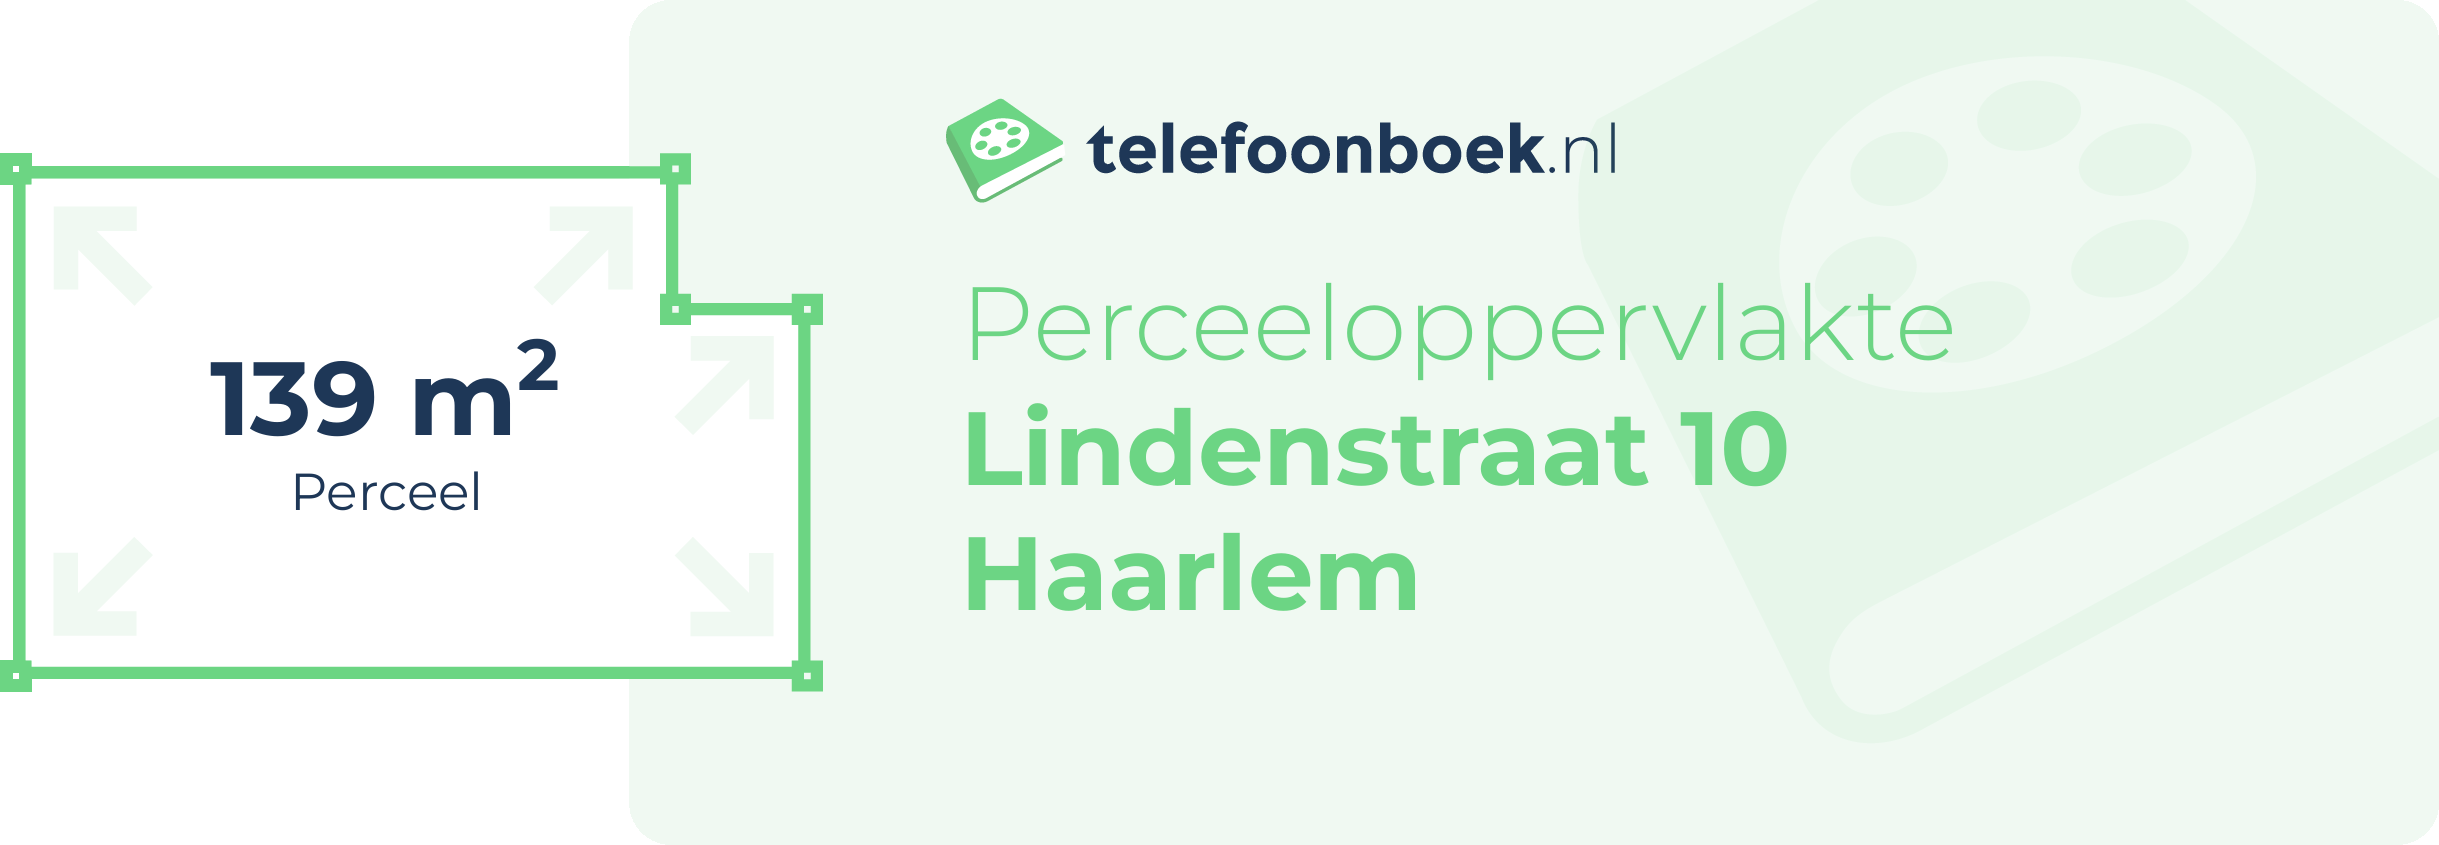 Perceeloppervlakte Lindenstraat 10 Haarlem